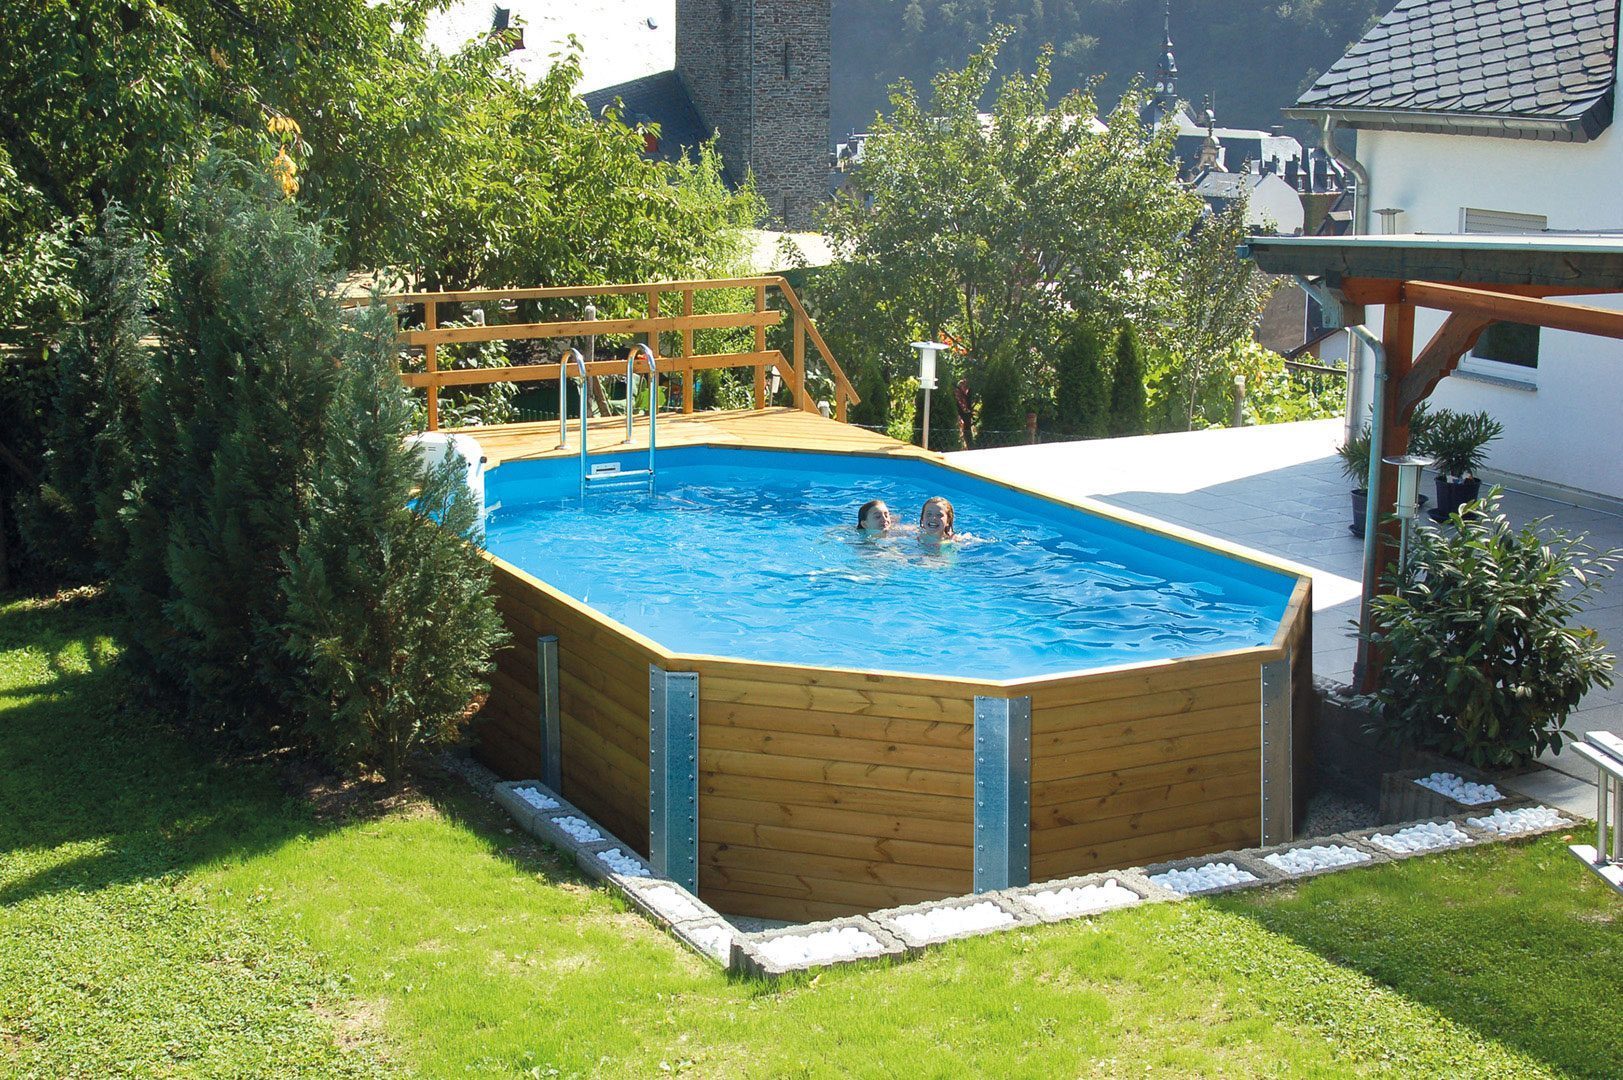 Massivholzpool von Weka. Grosser Weka Swimmingpool im Garten vor einem weissen Haus. Der Pool ist gefüllt mit zwei Kindern.